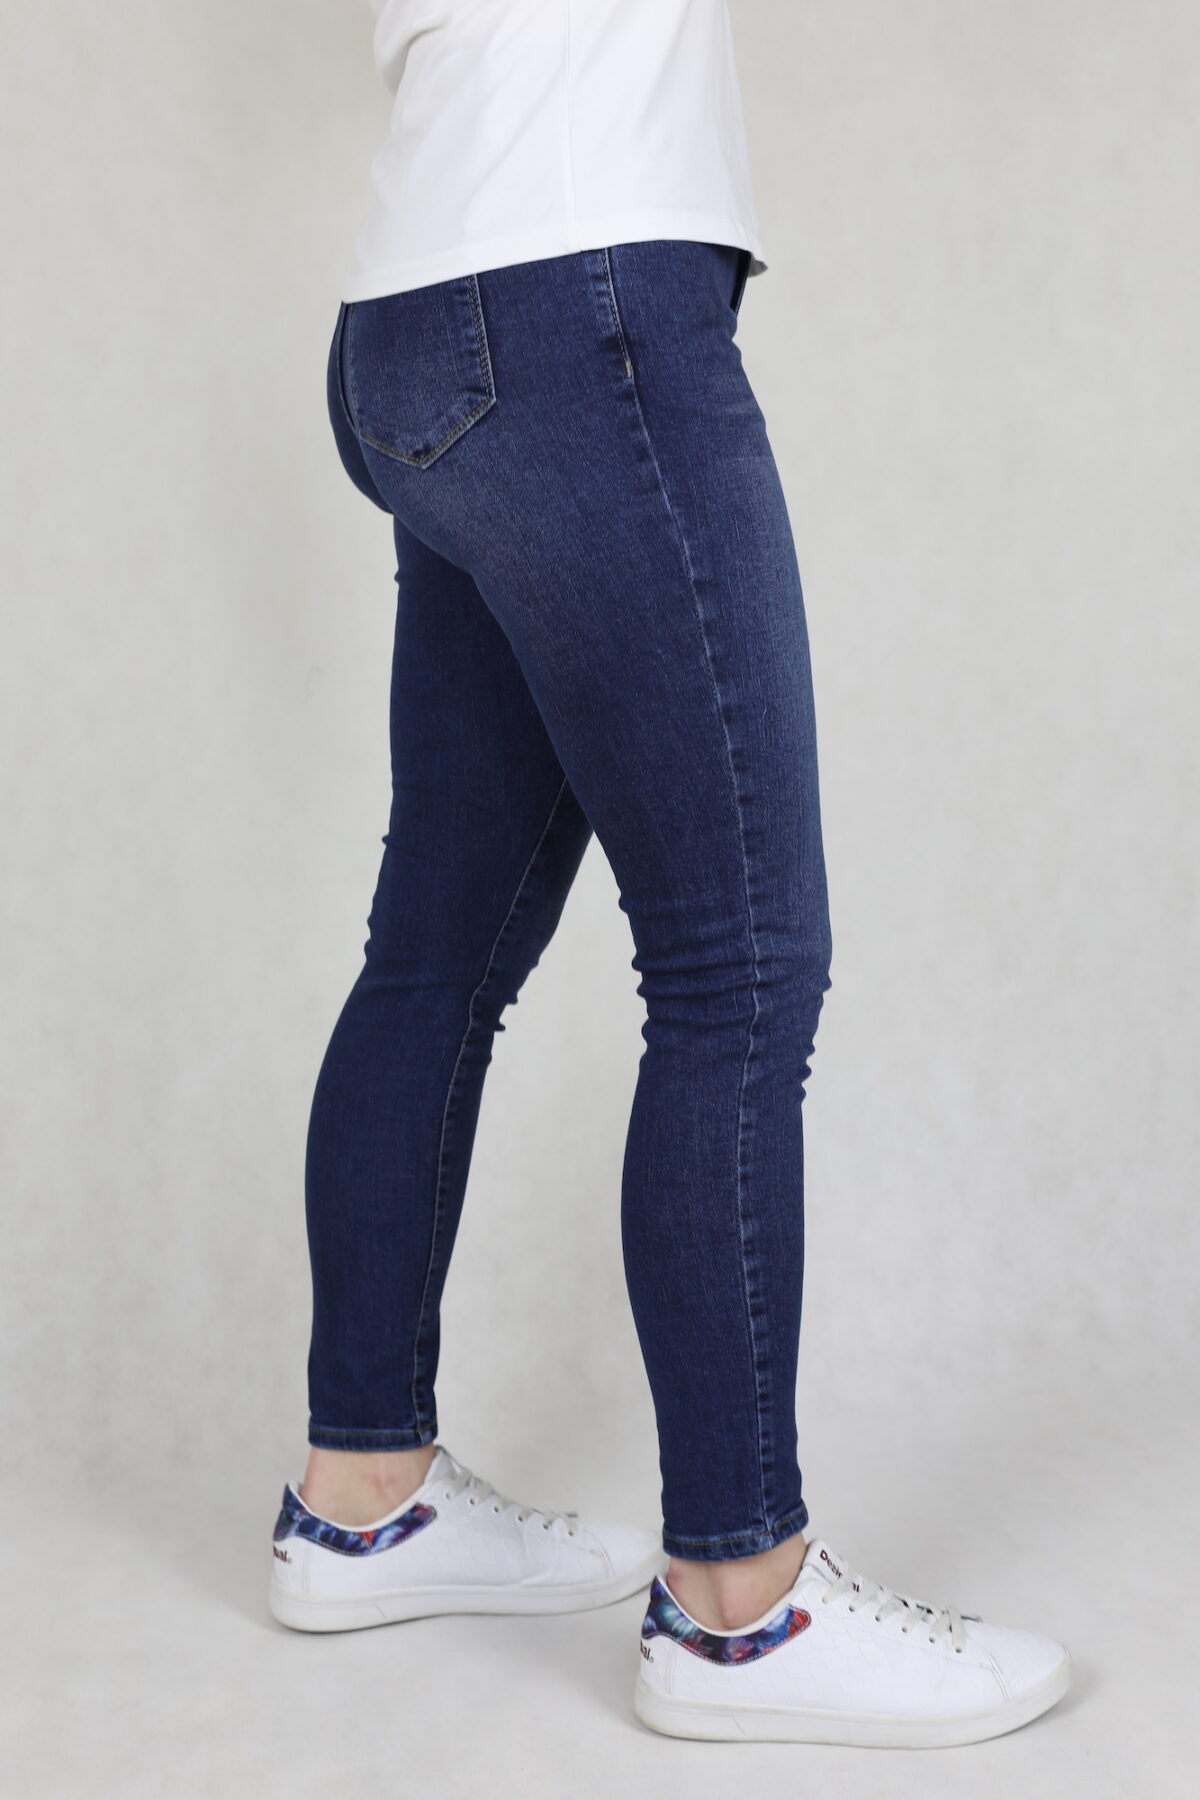 Spodnie jeansowe damskie, ciemnoniebieskie, przetarte, nogawka zwezana